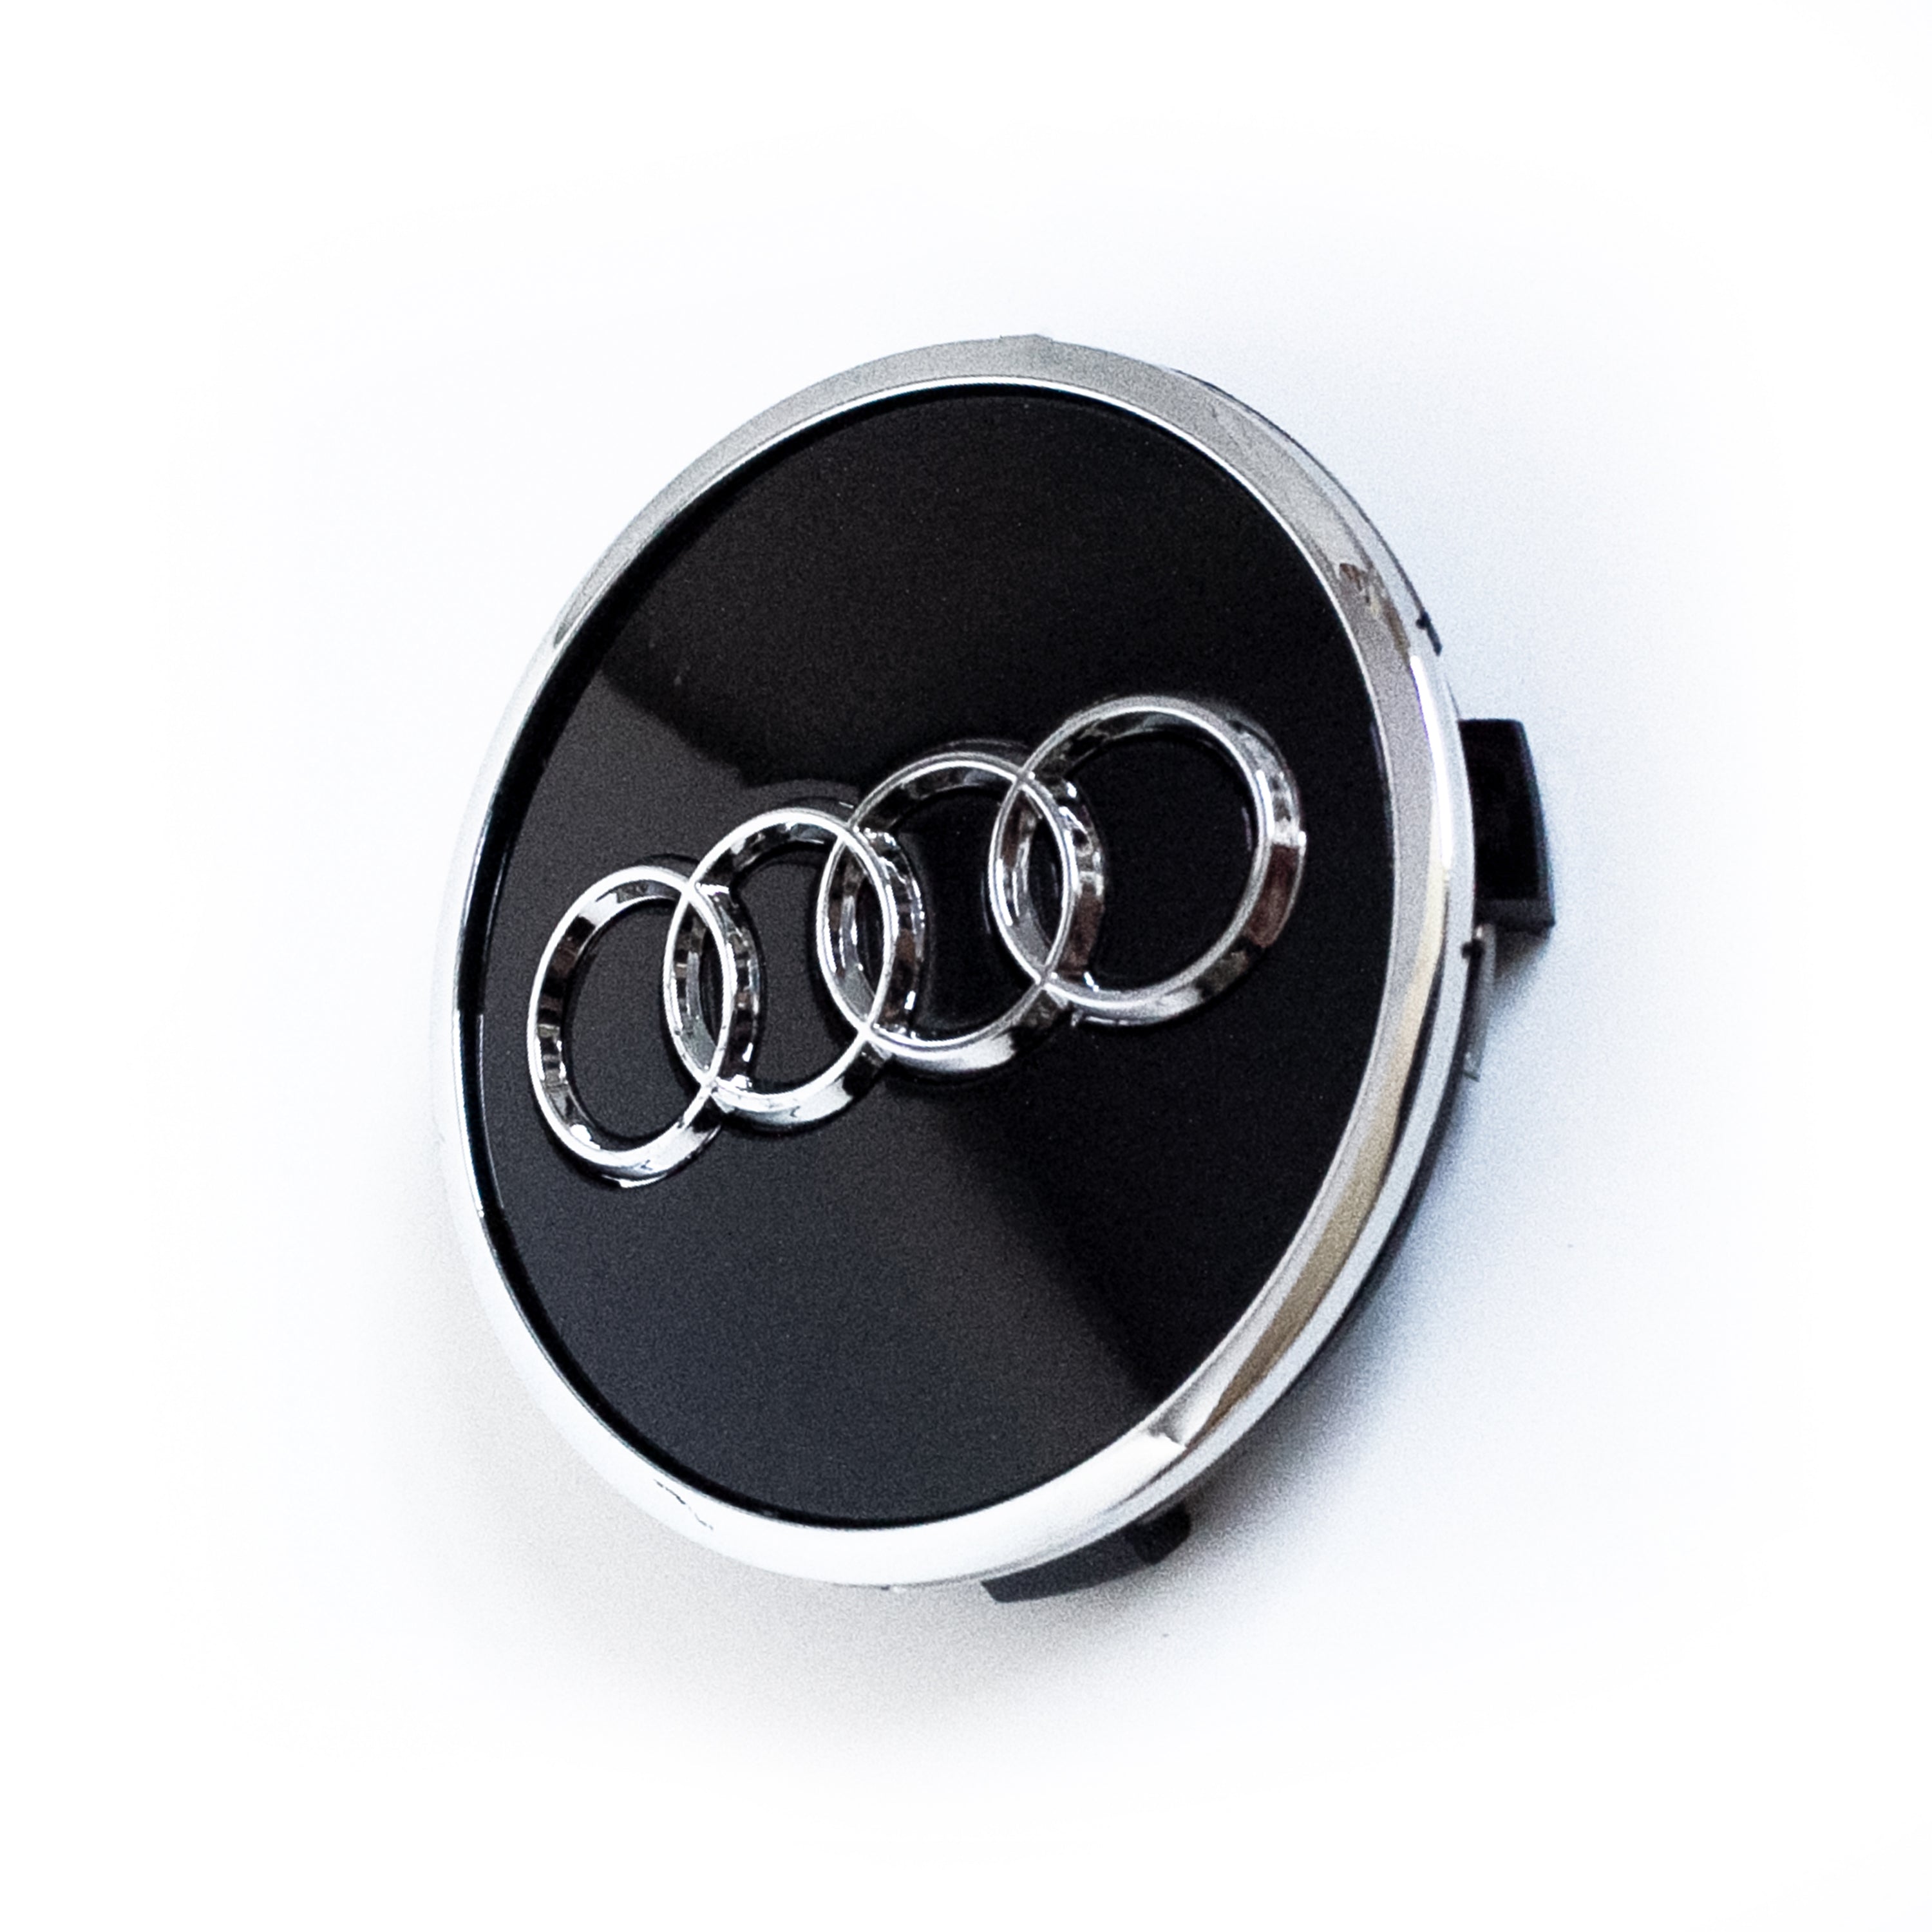 4PCS 69mm Black Audi Wheel Center Caps Fits C58939 Audi A3, A4, A5, Q7,  RS7, S5, TT OEM #8W0601170B